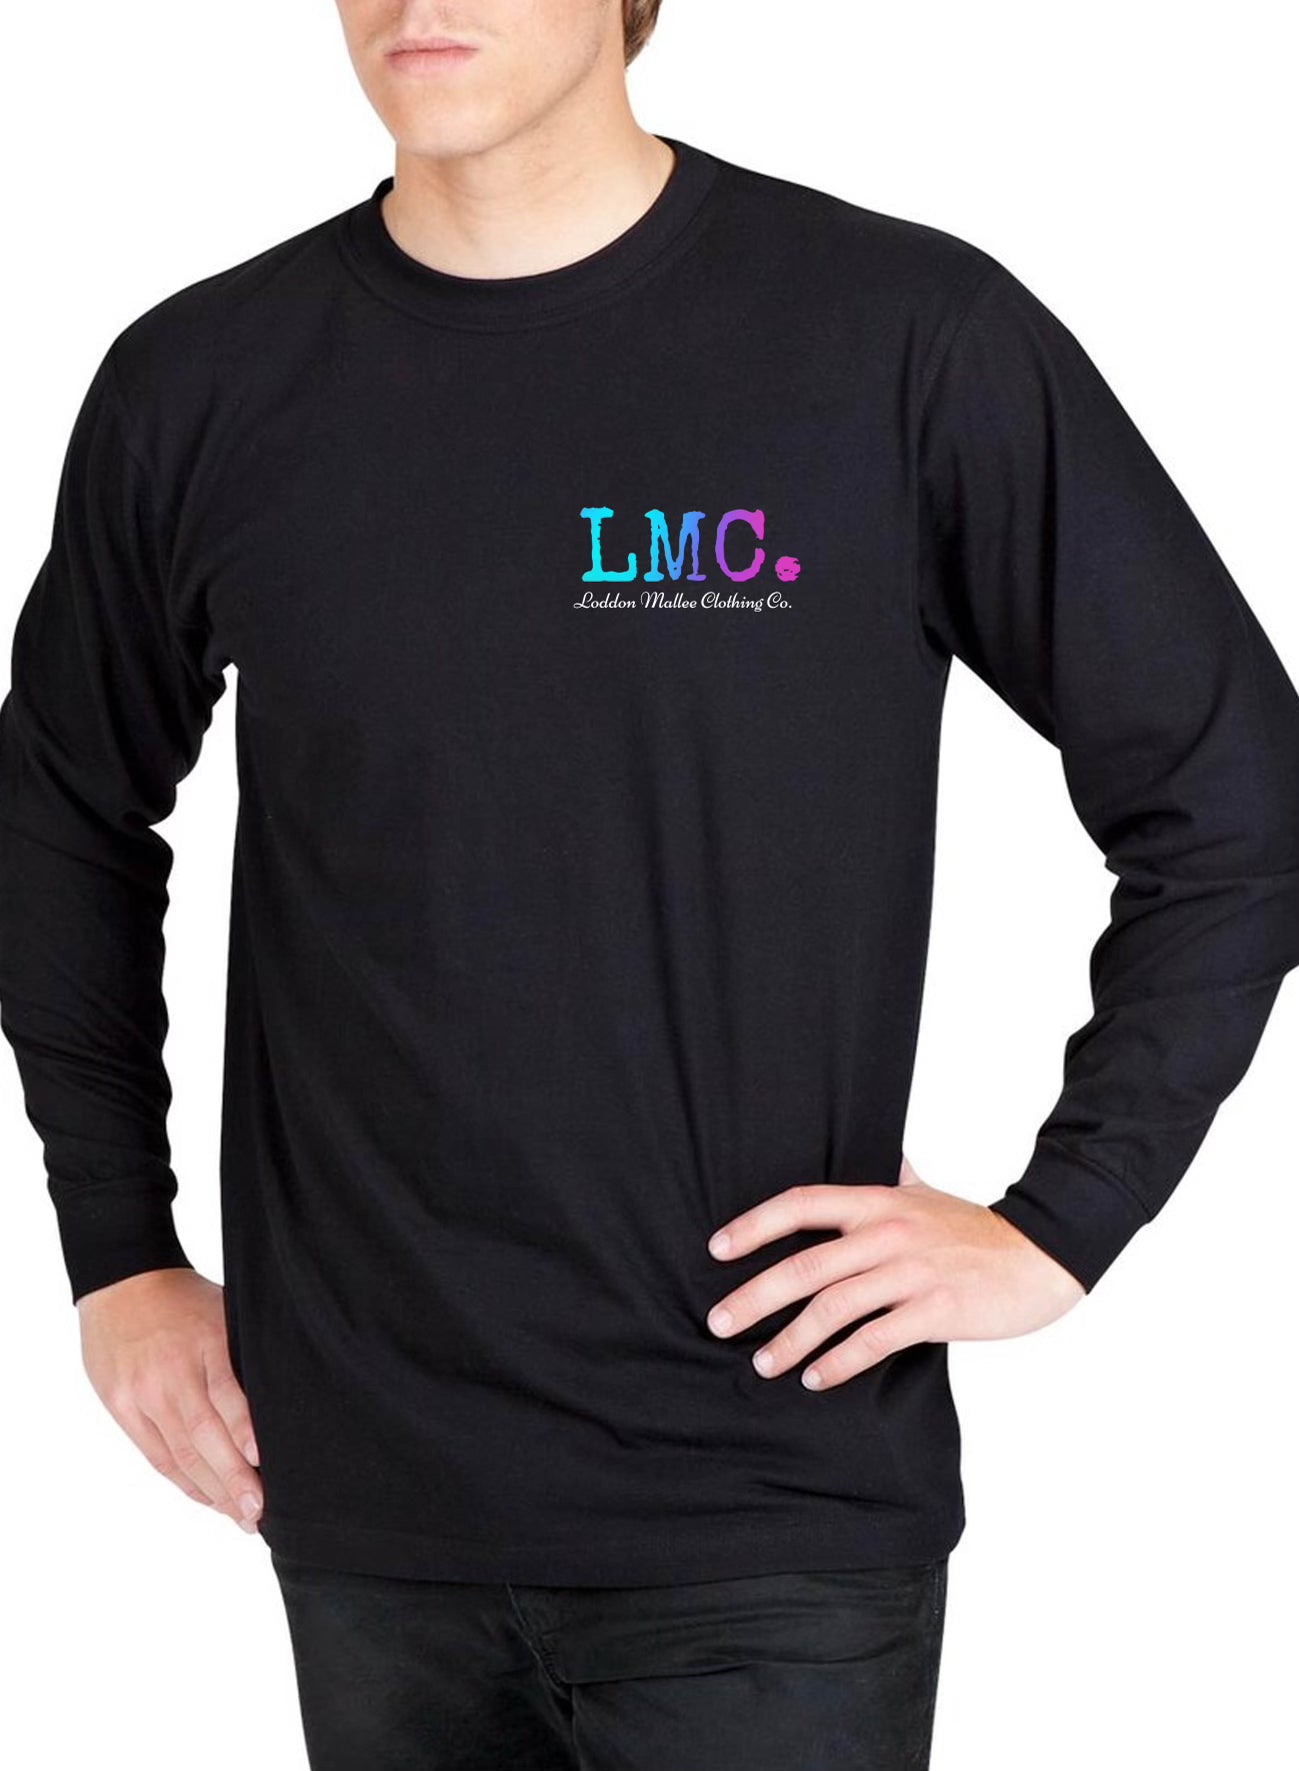 Loddon Mallee Shirts